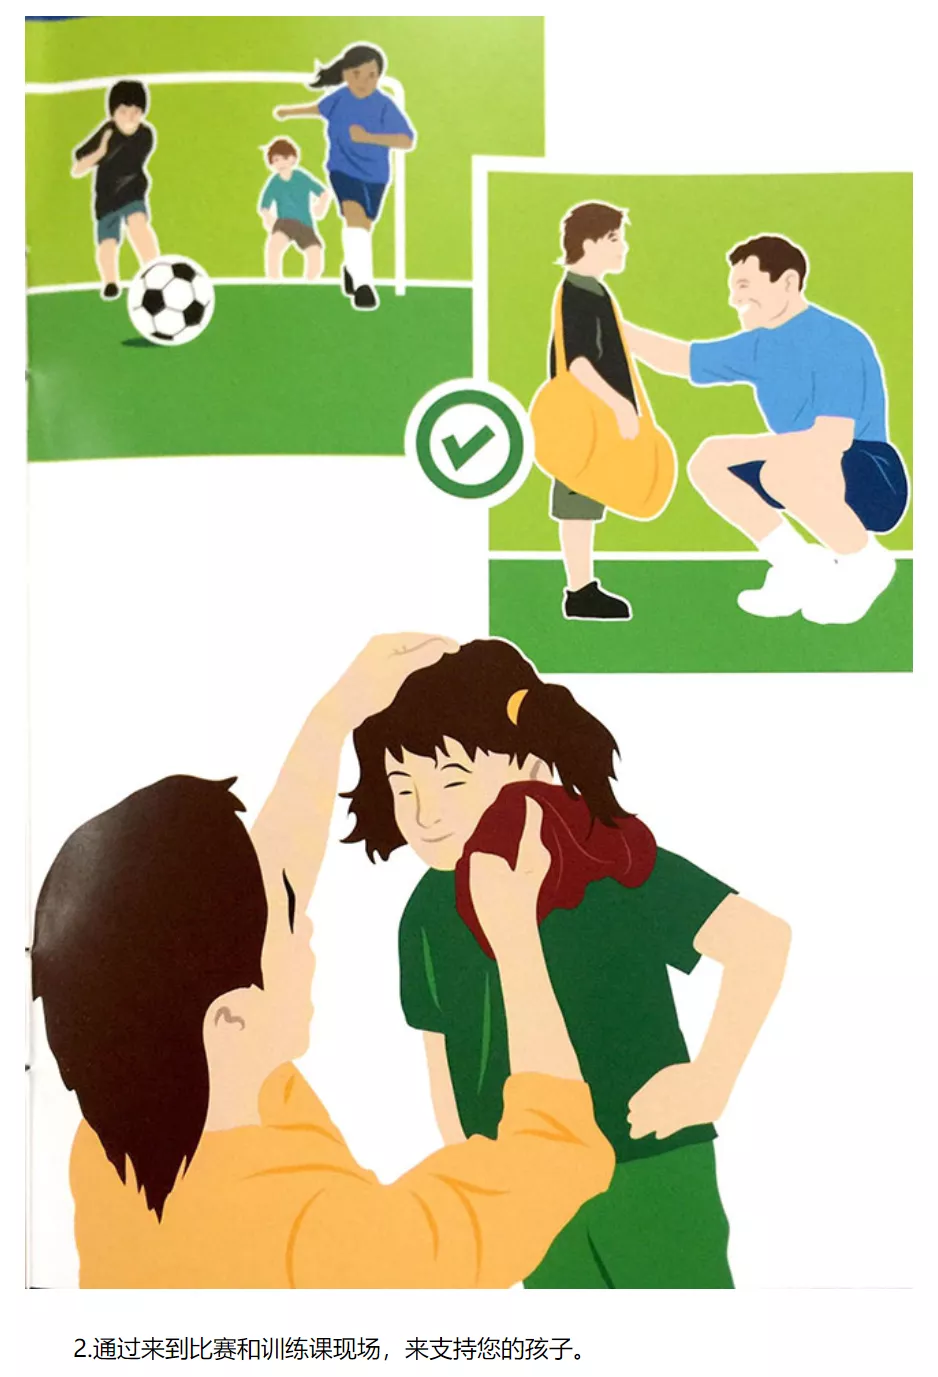 深圳王之者足球：国际足联给予参加足球活动青少年家长们的11条准则